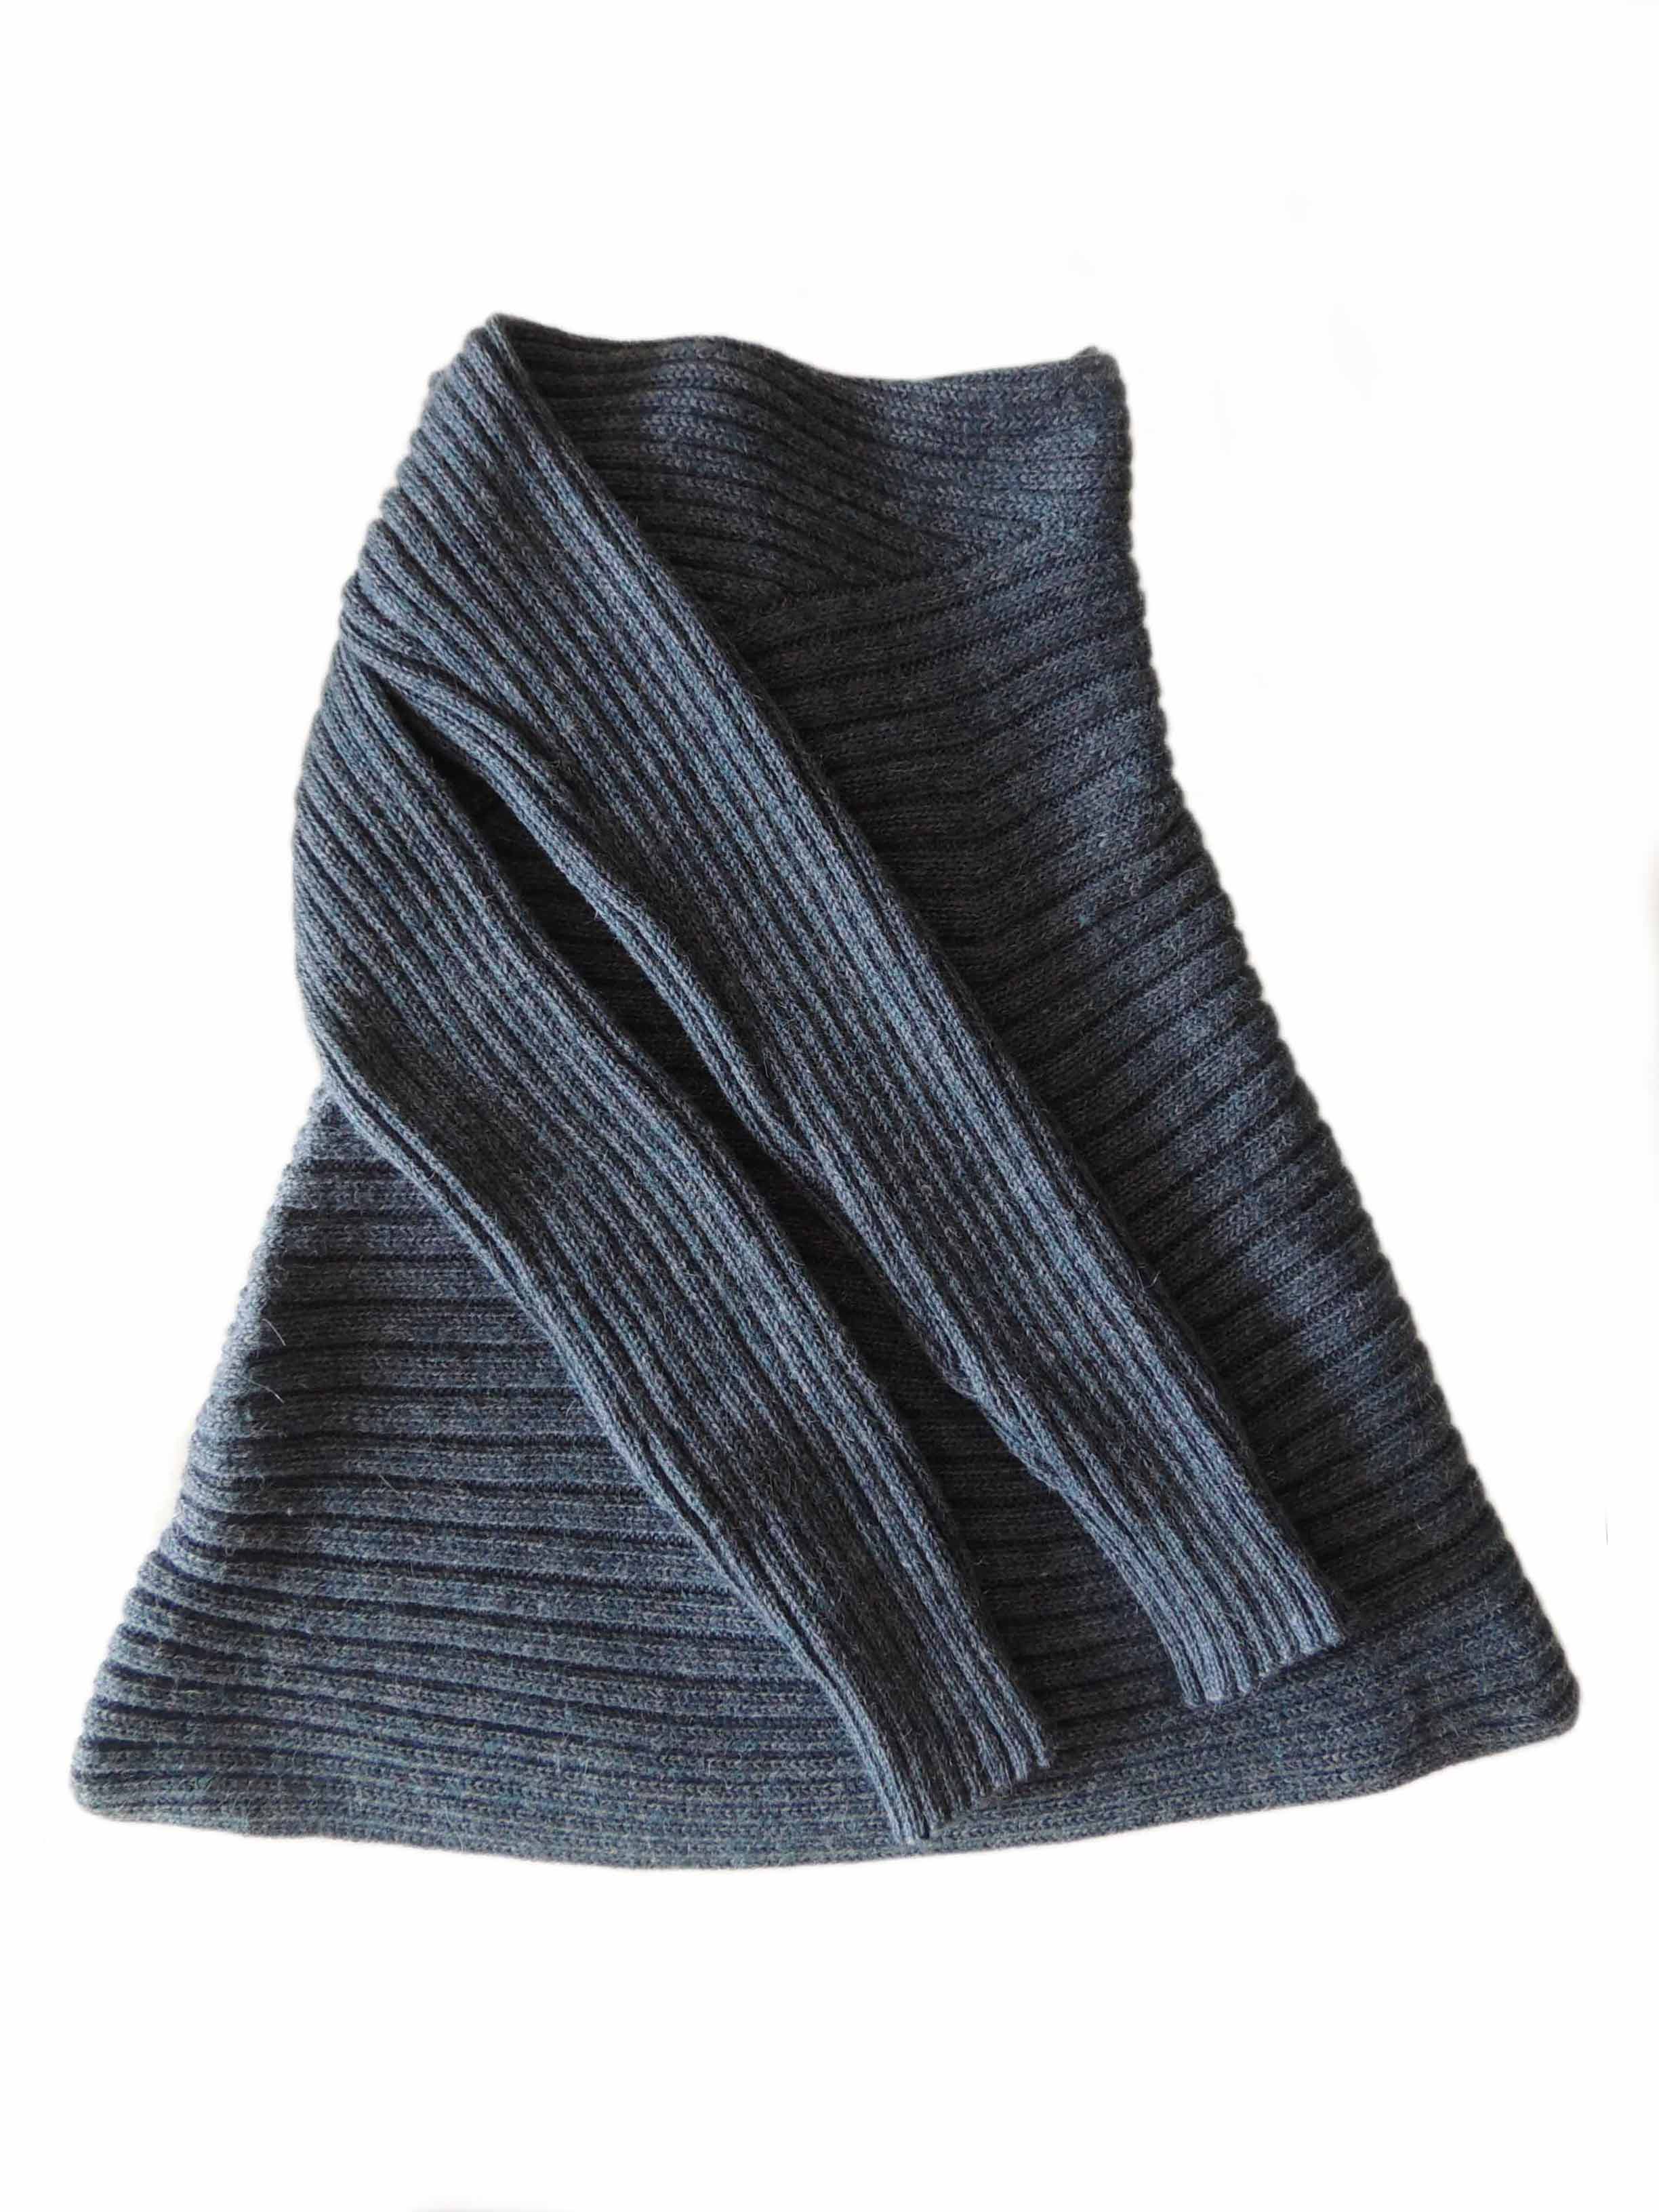 PFL Full knitted open cardigan model Keyla in a soft alpaca blend, steelblue